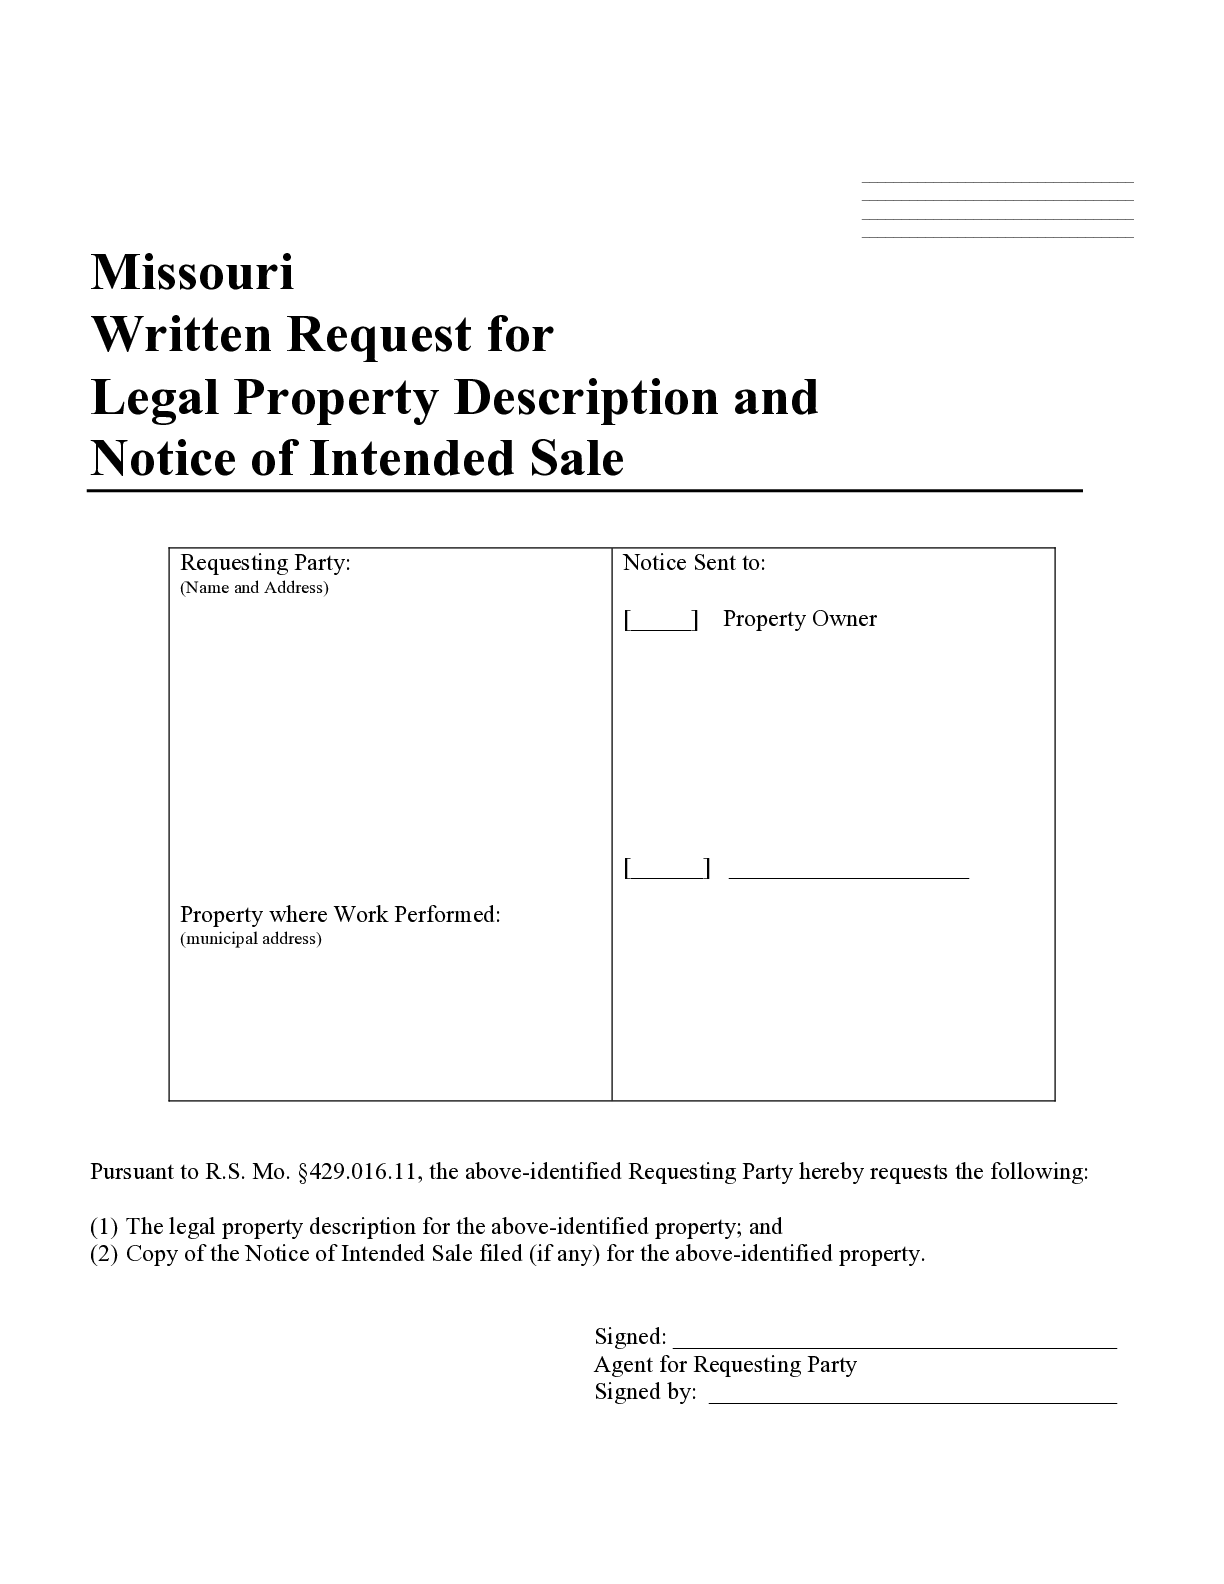 Missouri Request for Legal Property Description Form